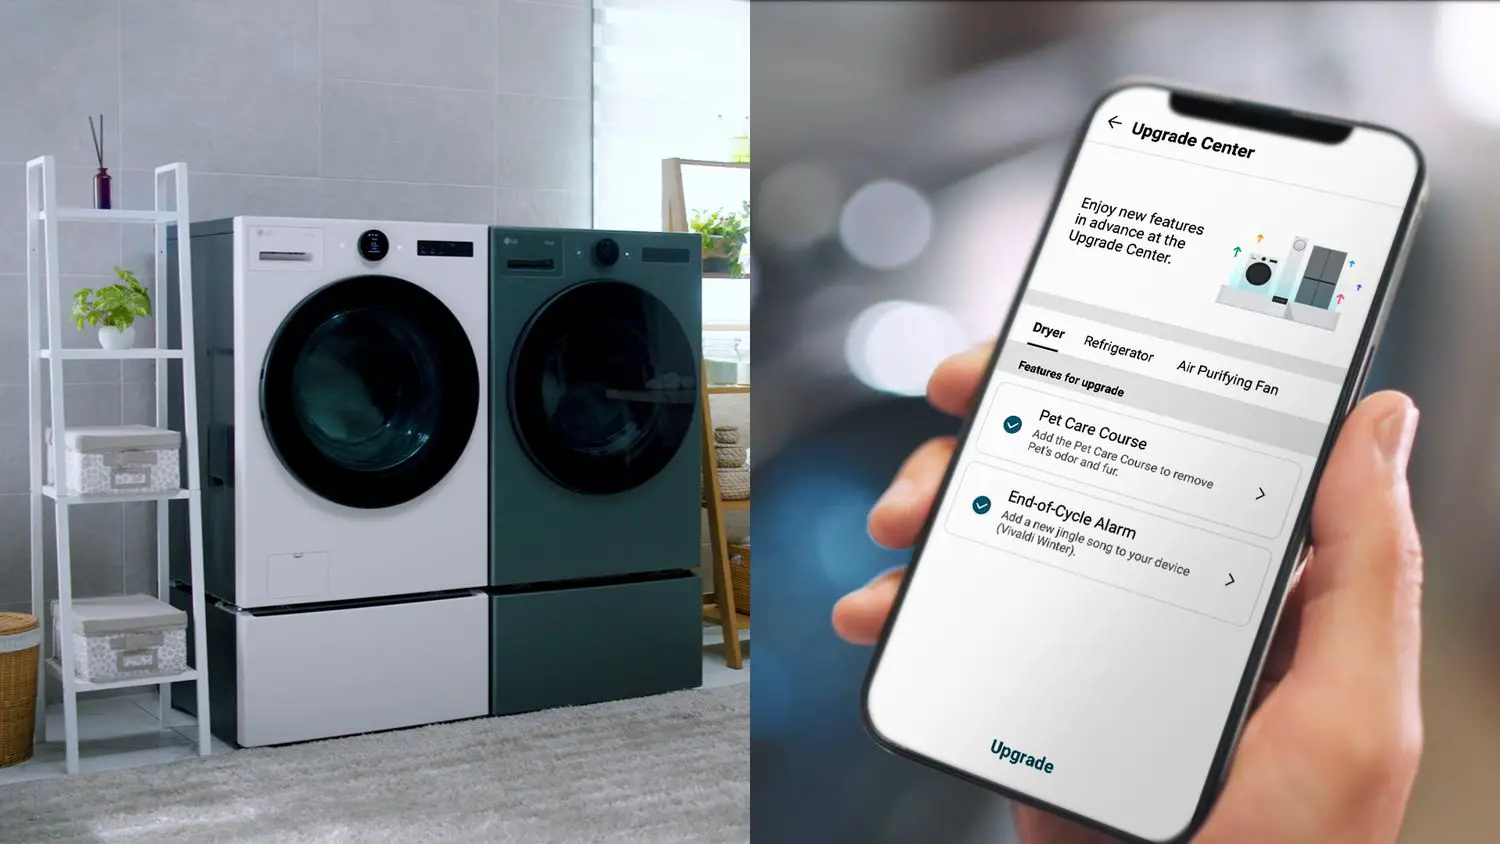 Máquina de lavar/secar roupa atualizável da LG com um smartphone pronto para enviar uma atualização